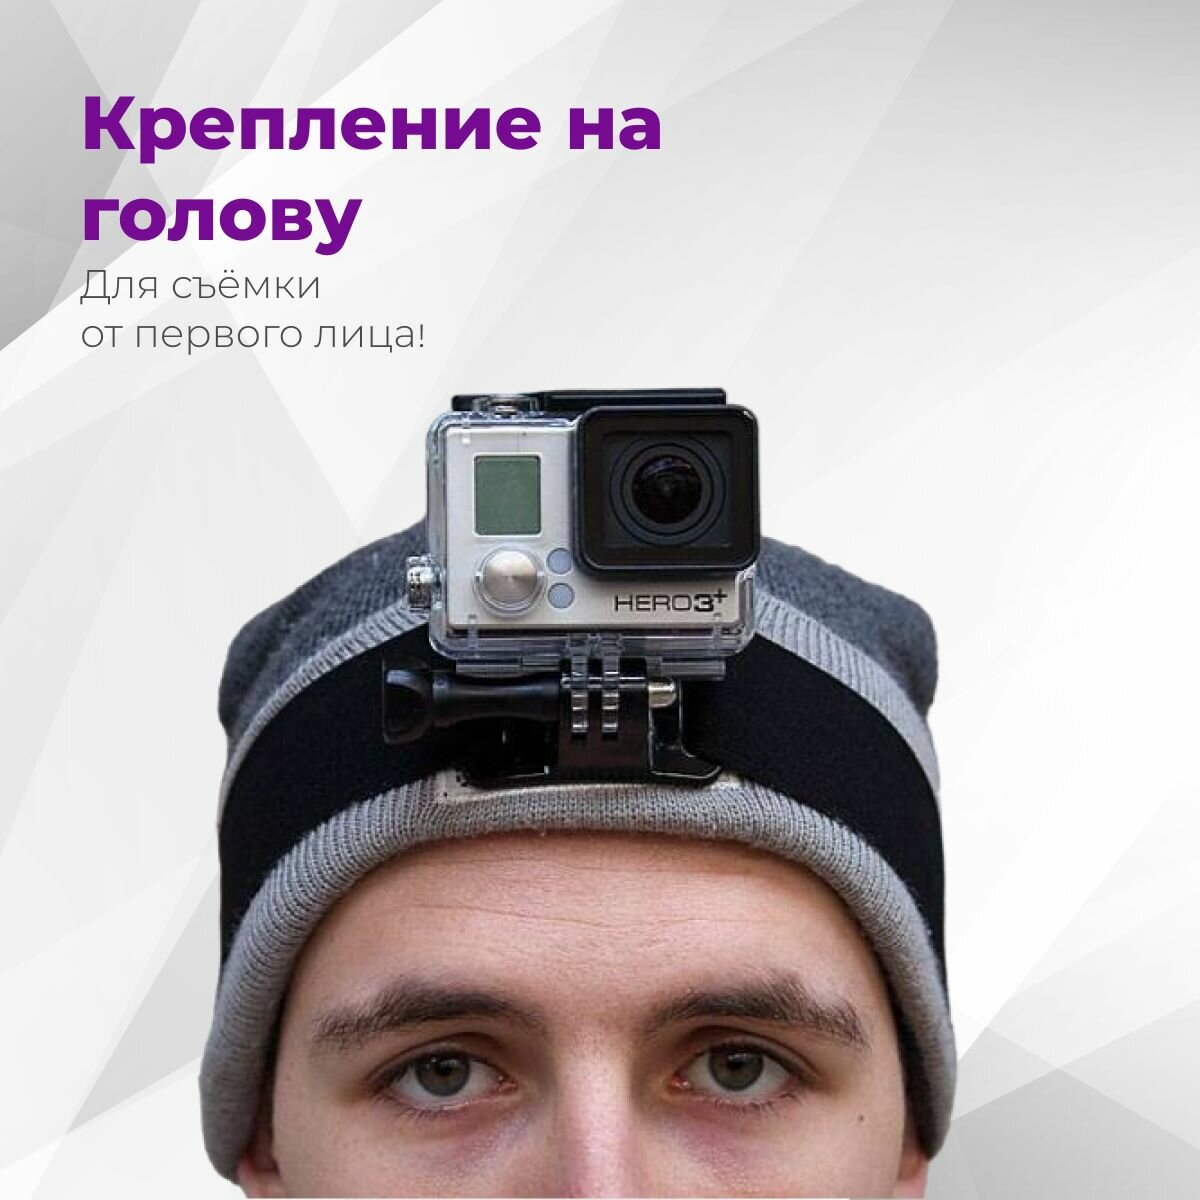 Крепление на голову для экшн-камер GoPro, DJI, Sjcam, Xiaomi и других